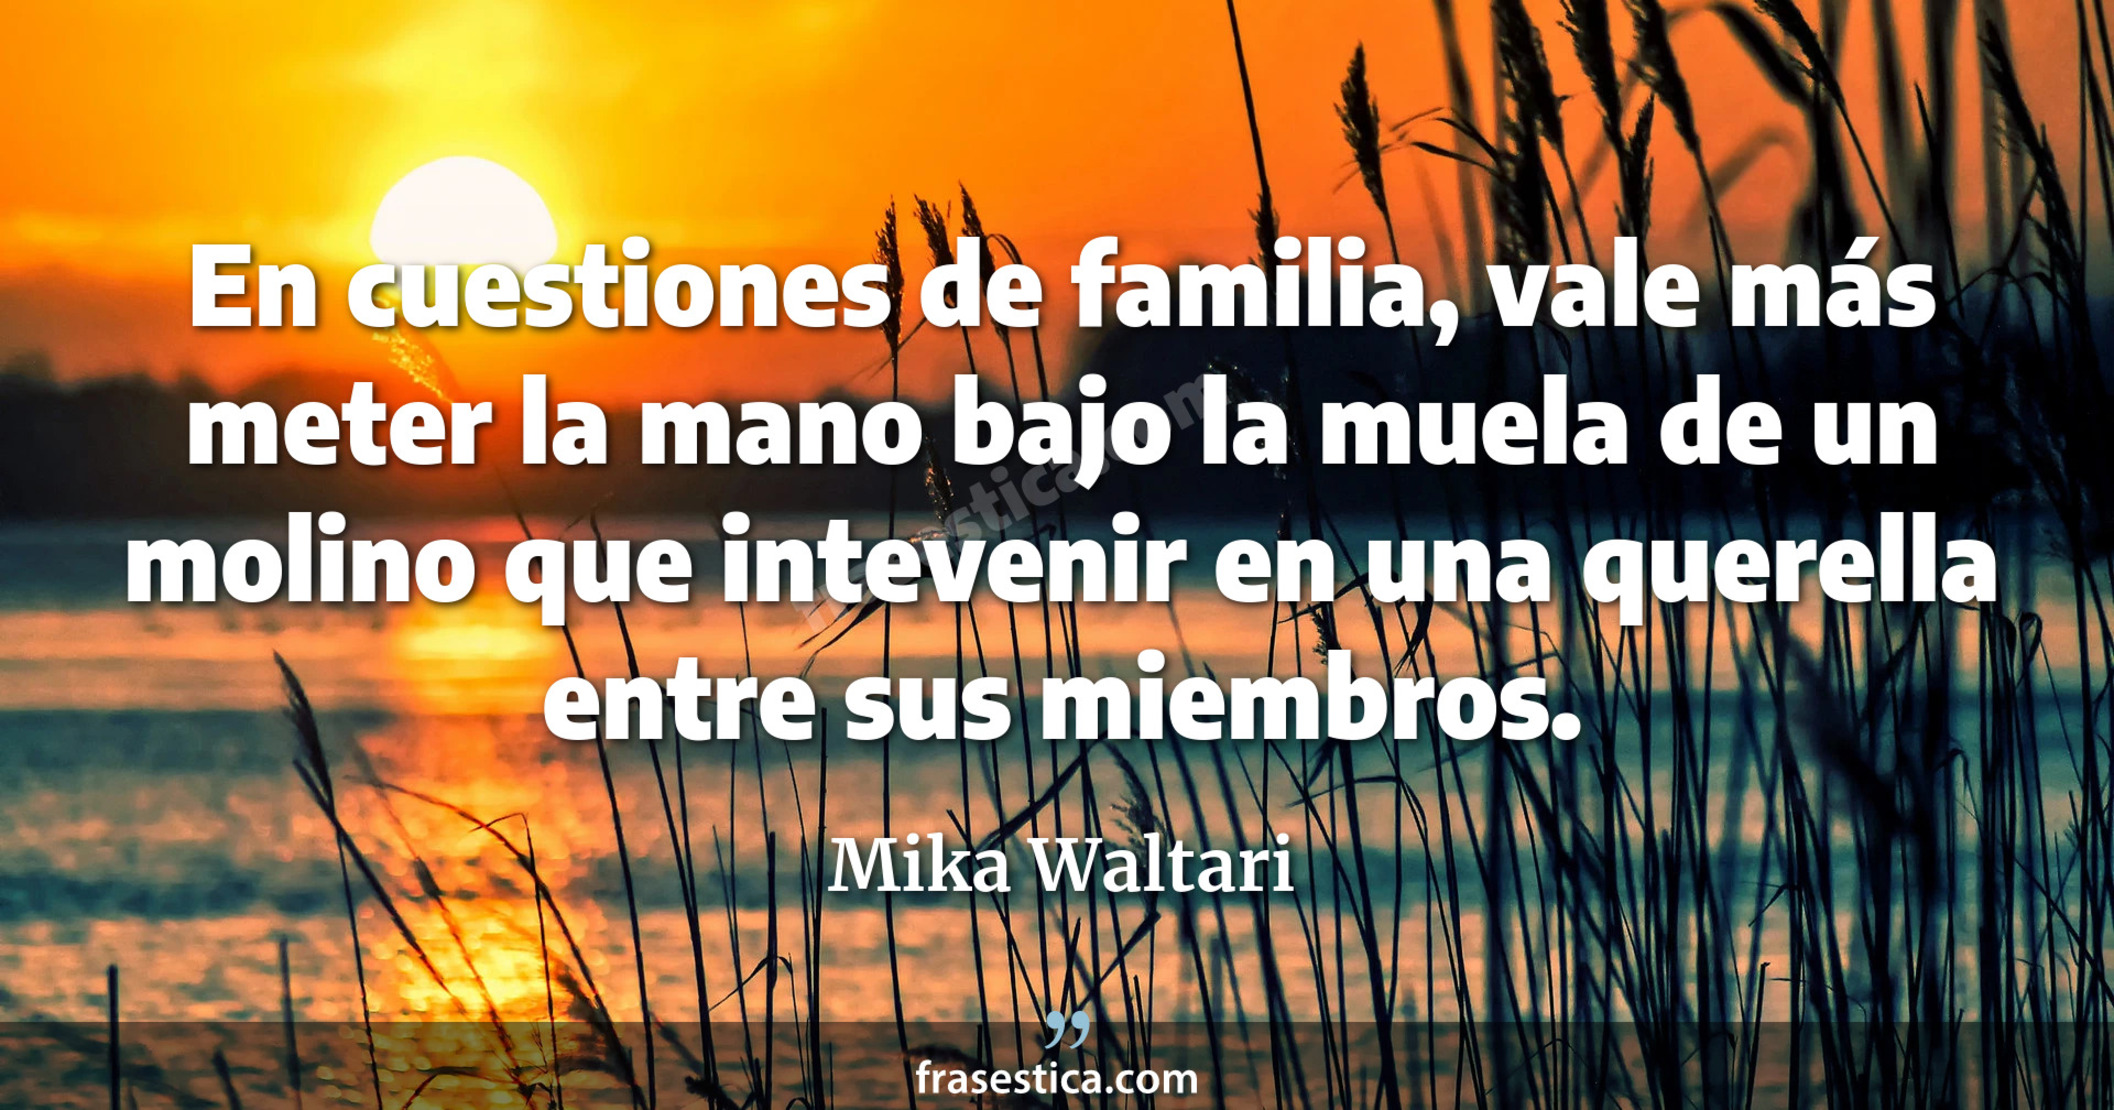 En cuestiones de familia, vale más meter la mano bajo la muela de un molino que intevenir en una querella entre sus miembros. - Mika Waltari